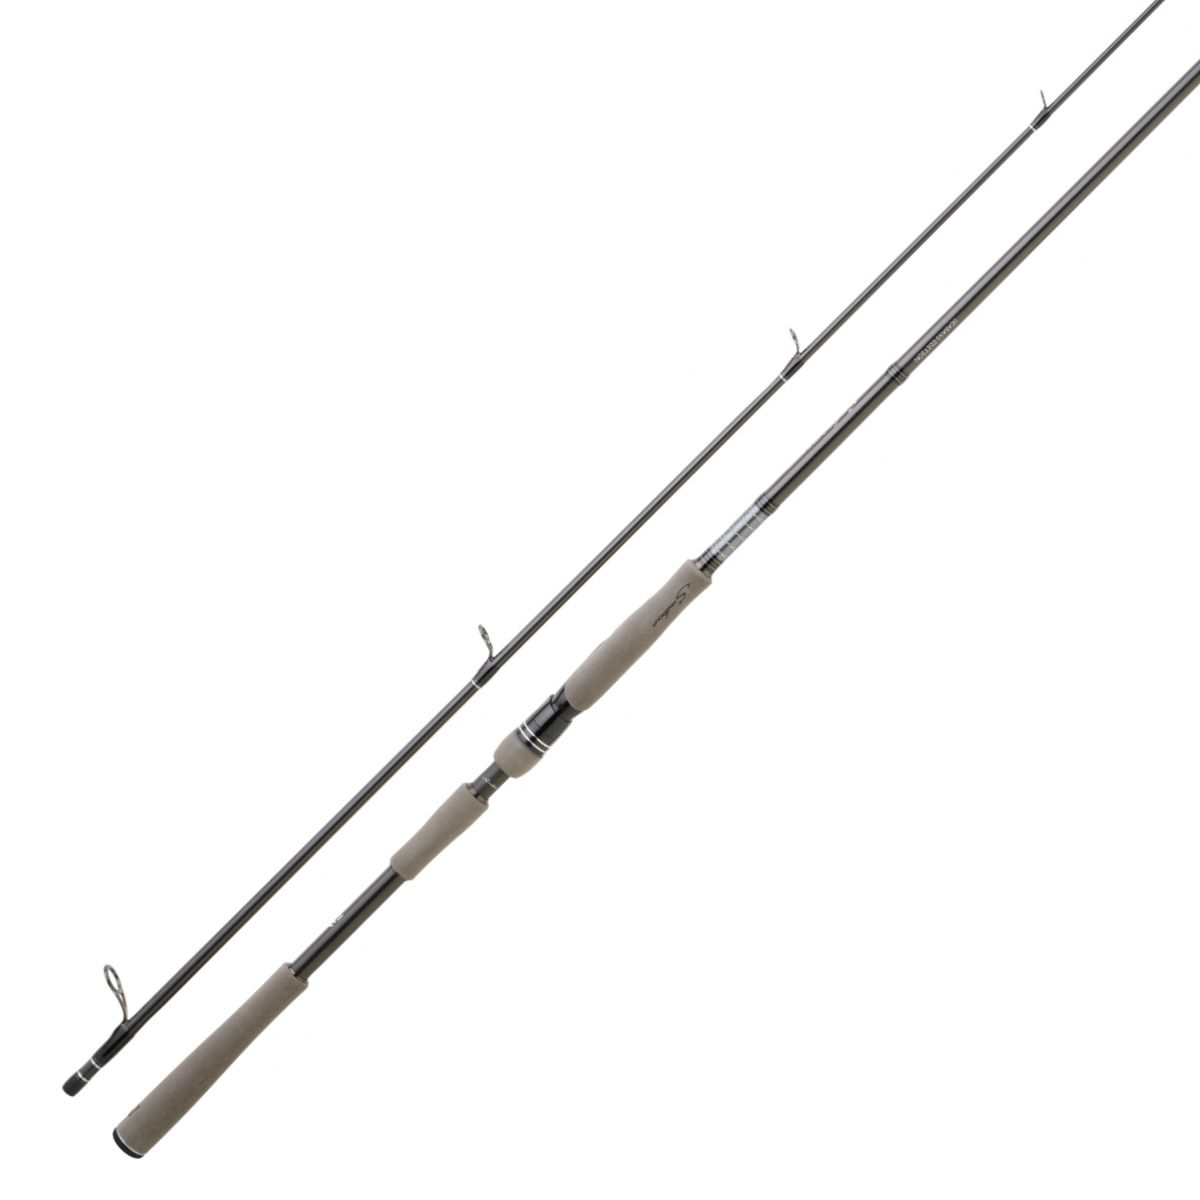 Anneau en acier inoxydable pour canne à pêche Kali 55 mm. diamètre